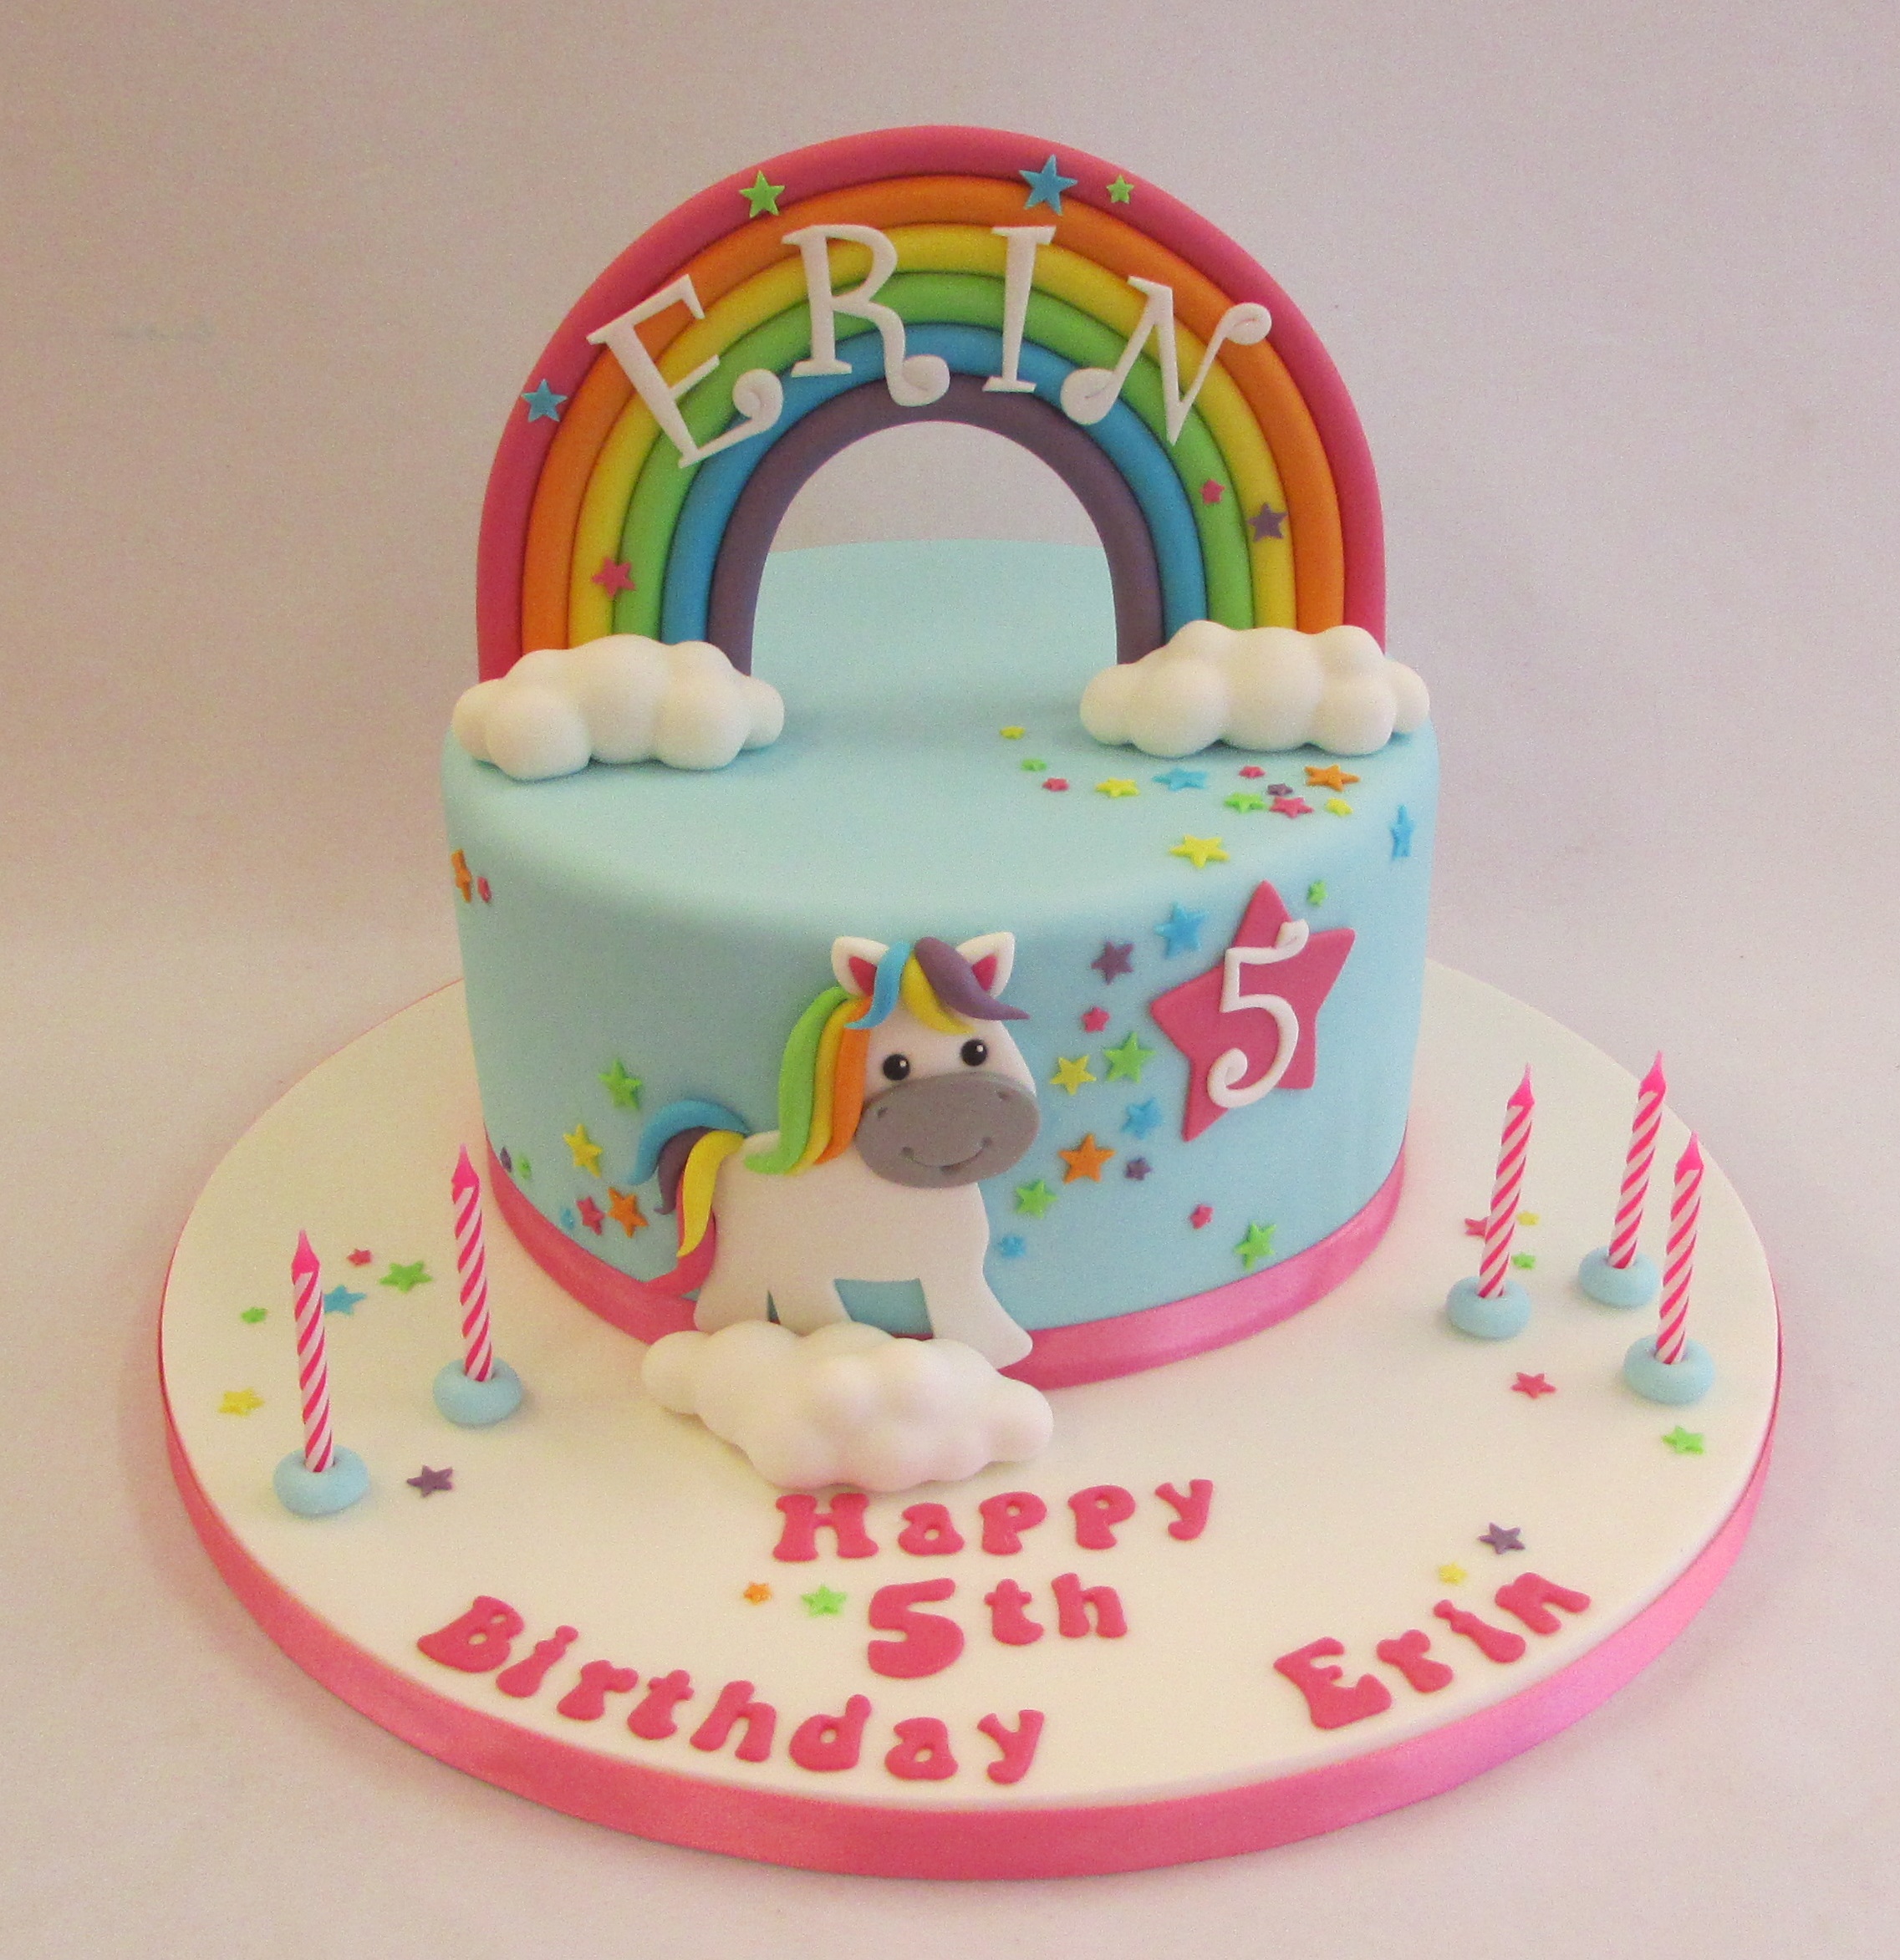 Torta unicorno: compleanno a tema unicorno speciale e divertente - Irpot